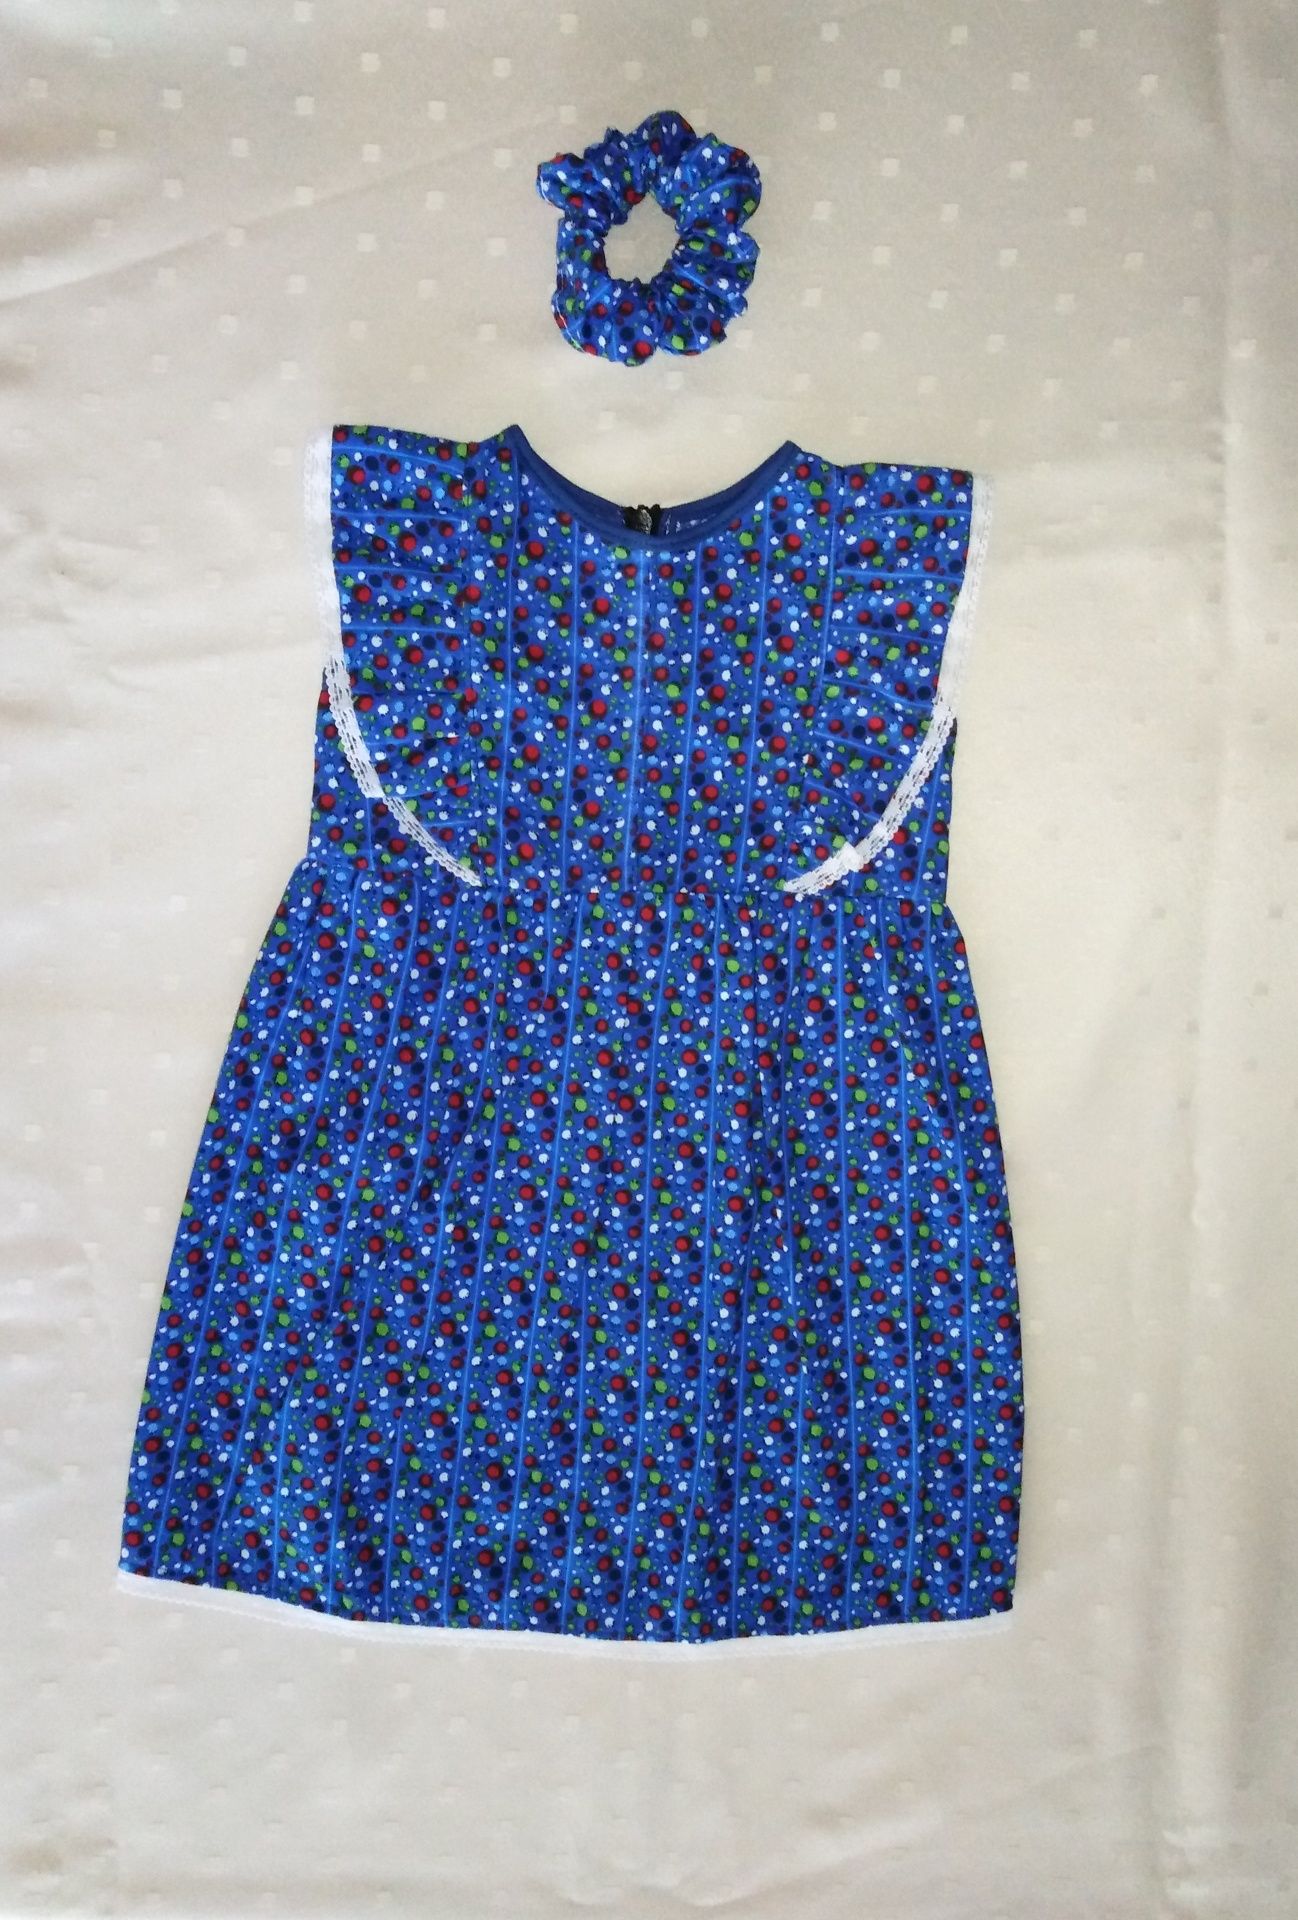 Детска рокля Детска рокля 80 - 86